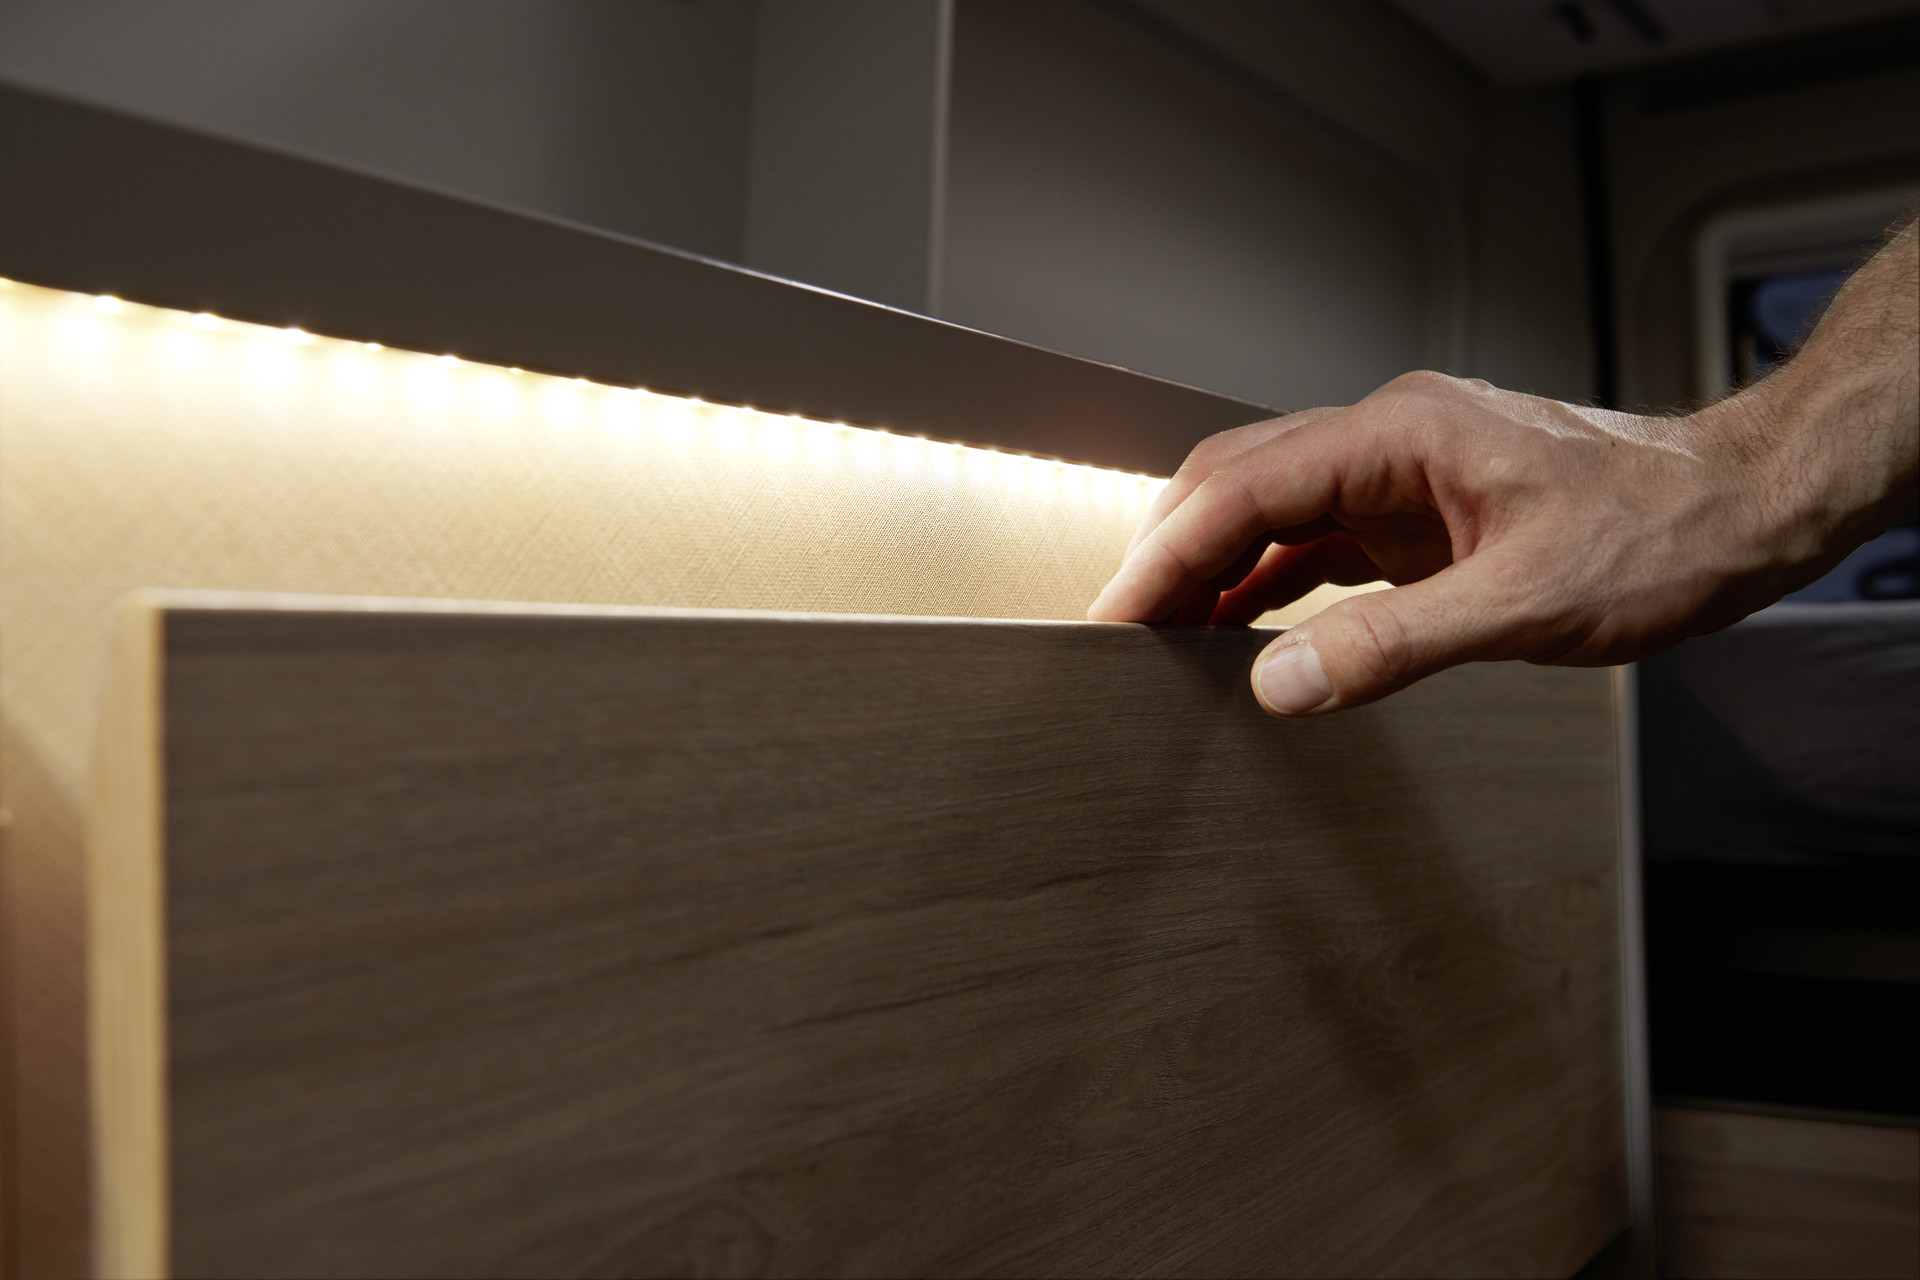 A iluminação indireta ilumina a gaveta, criando ao mesmo tempo um ambiente quente e acolhedor.